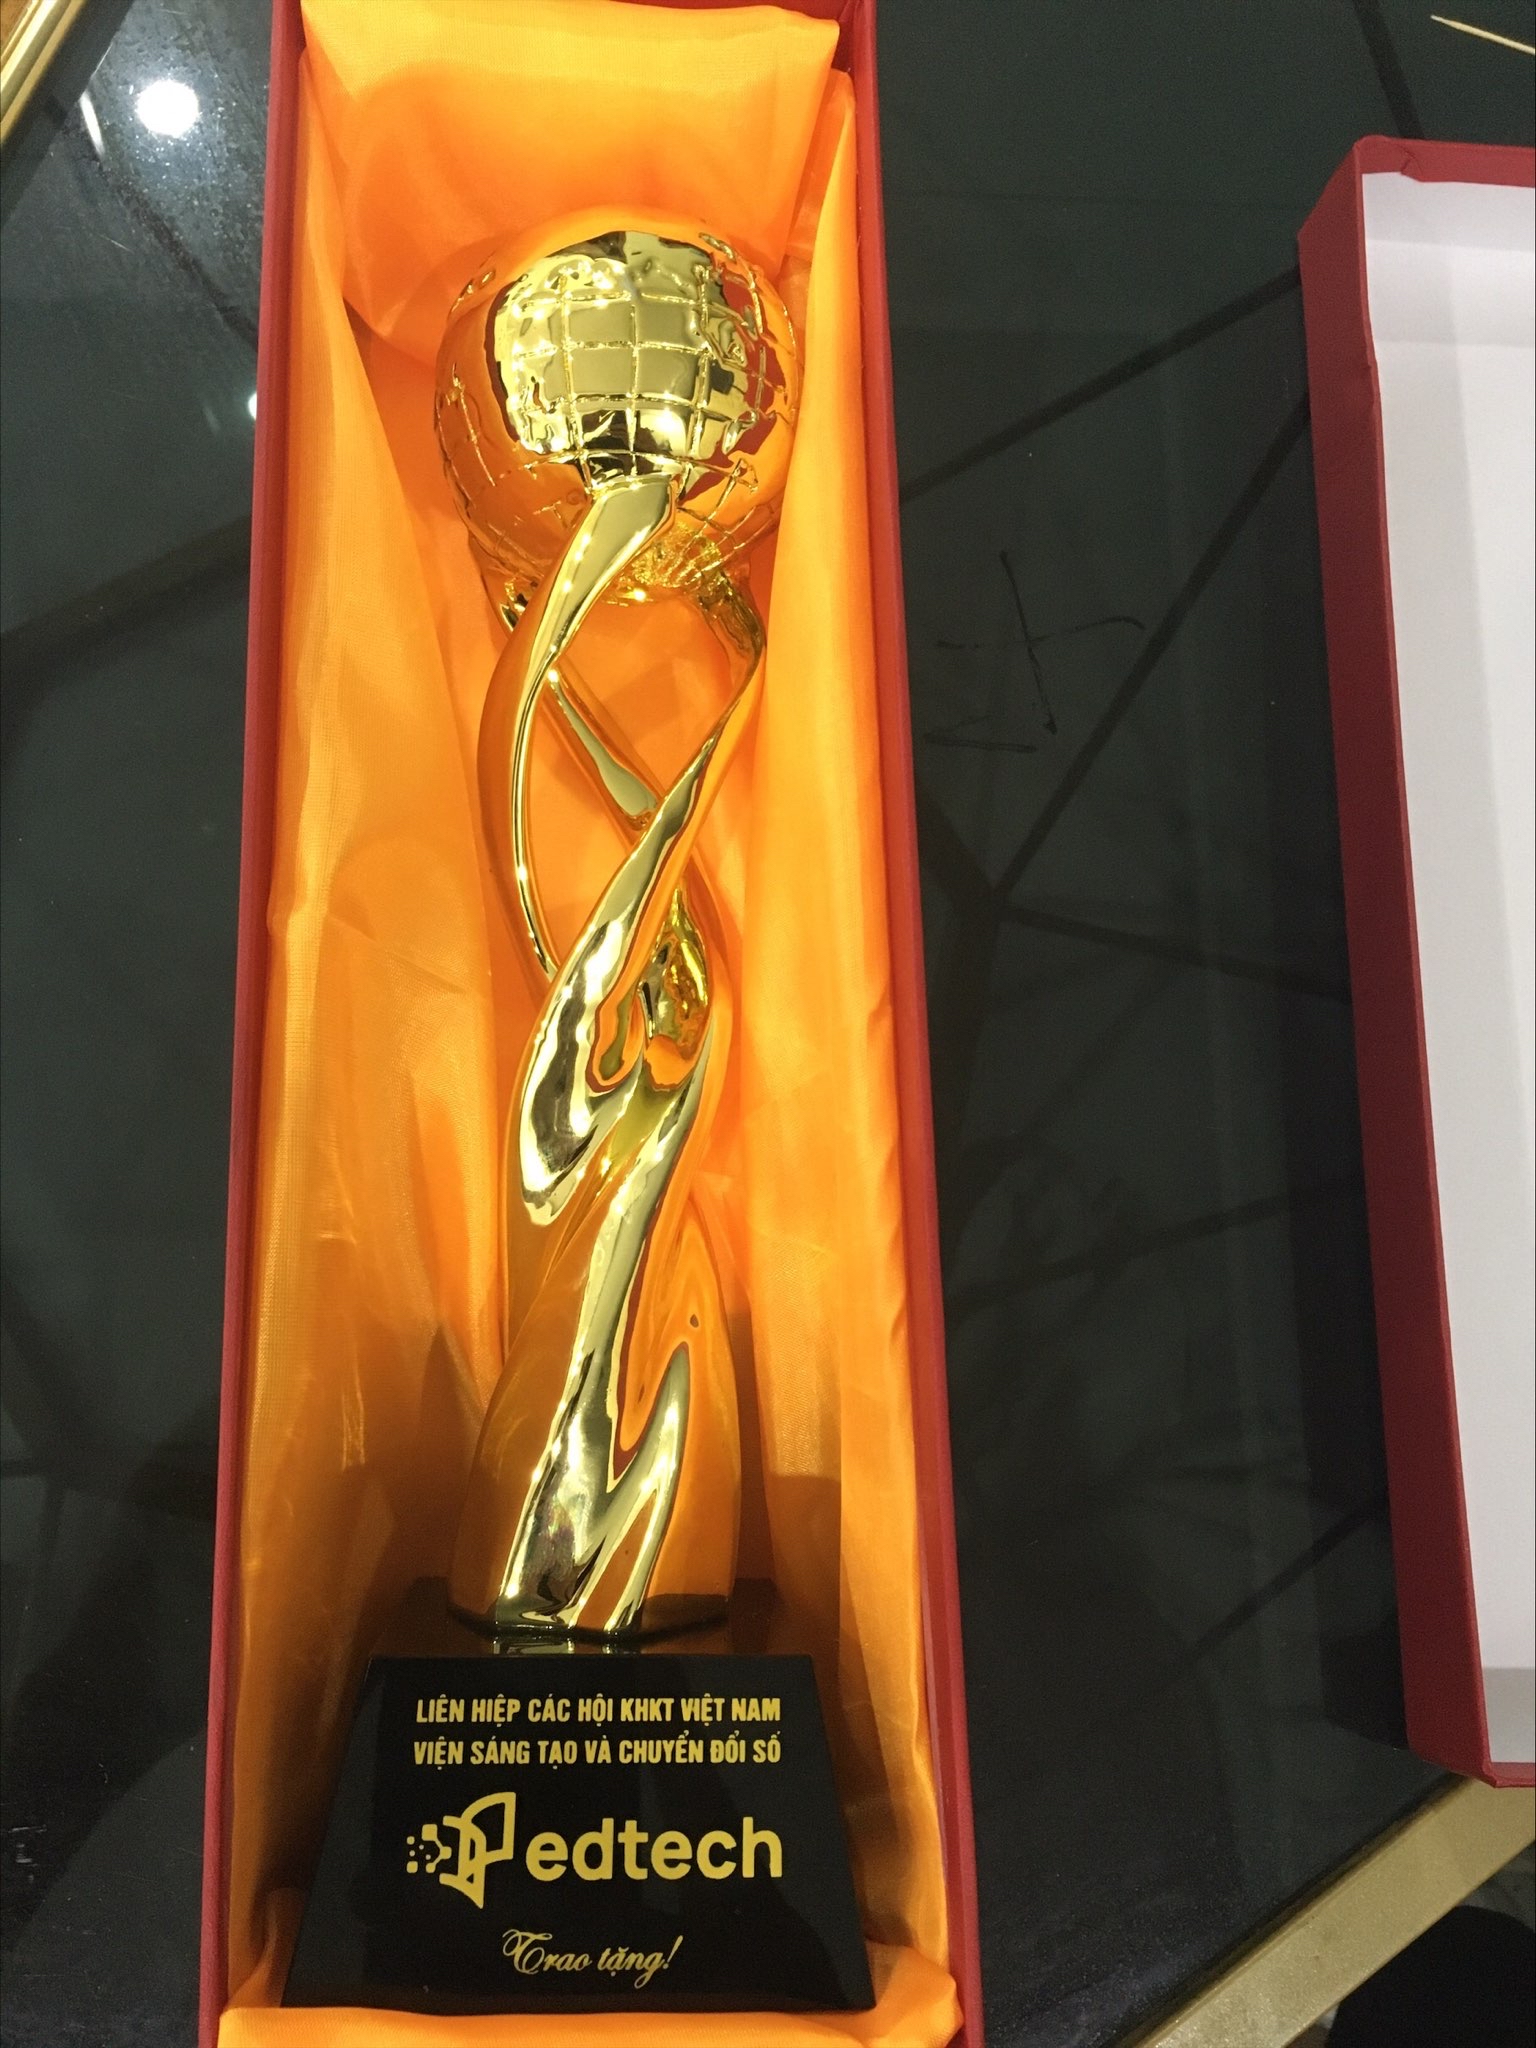 Cúp vàng- Việt Vang được Edtech trao tặng giải ảnh hưởng giáo dục của